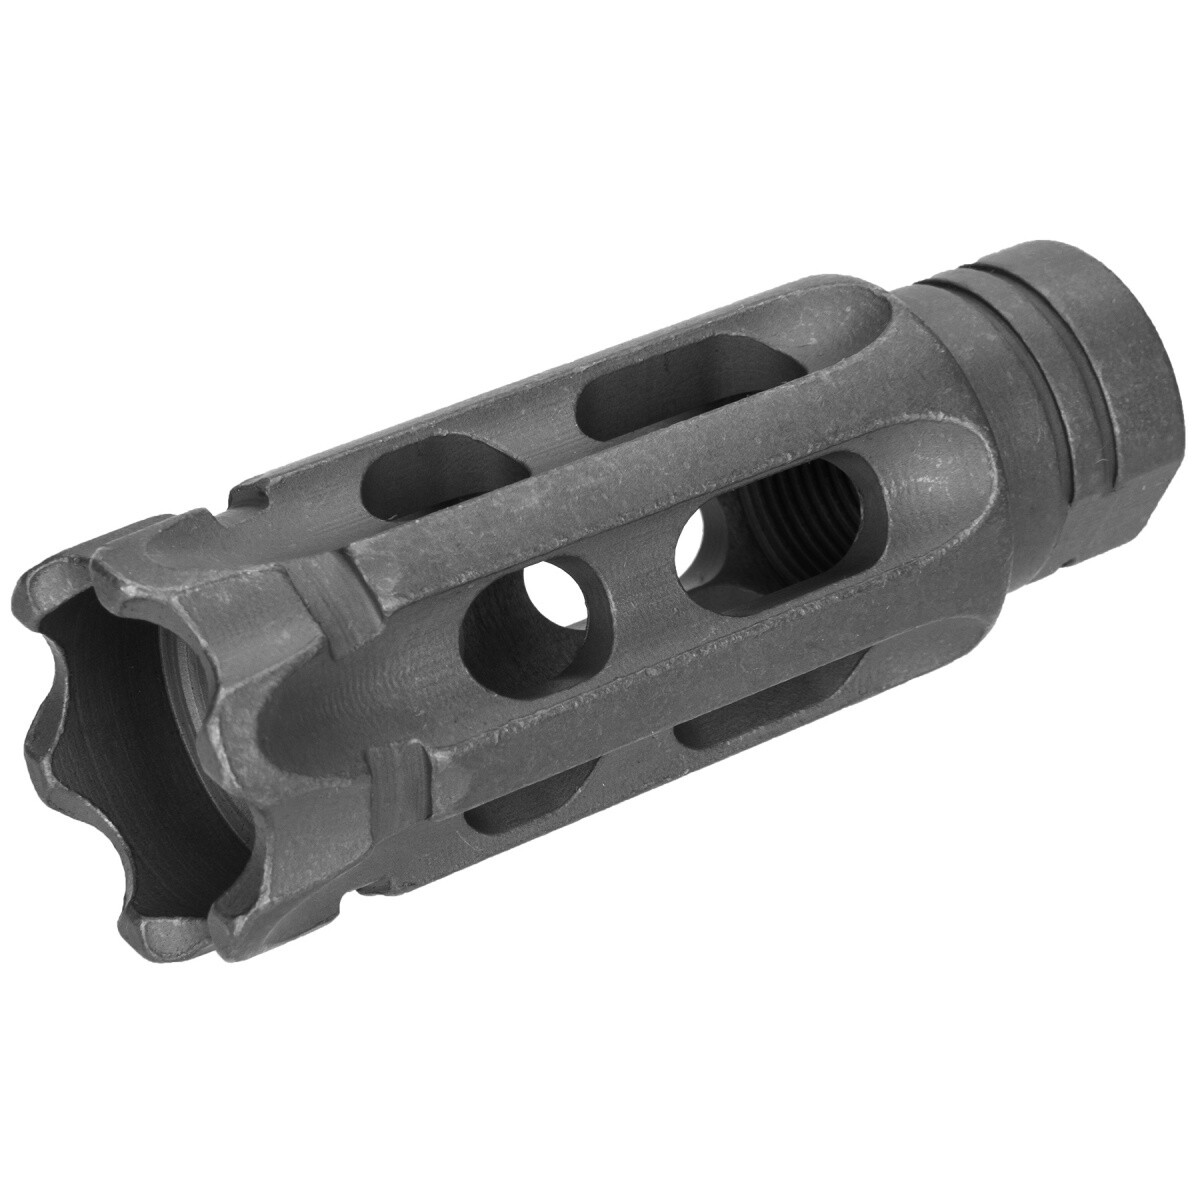 5KU 14mm Negative Mini Breacher Muzzle Break for Airsoft Rifles